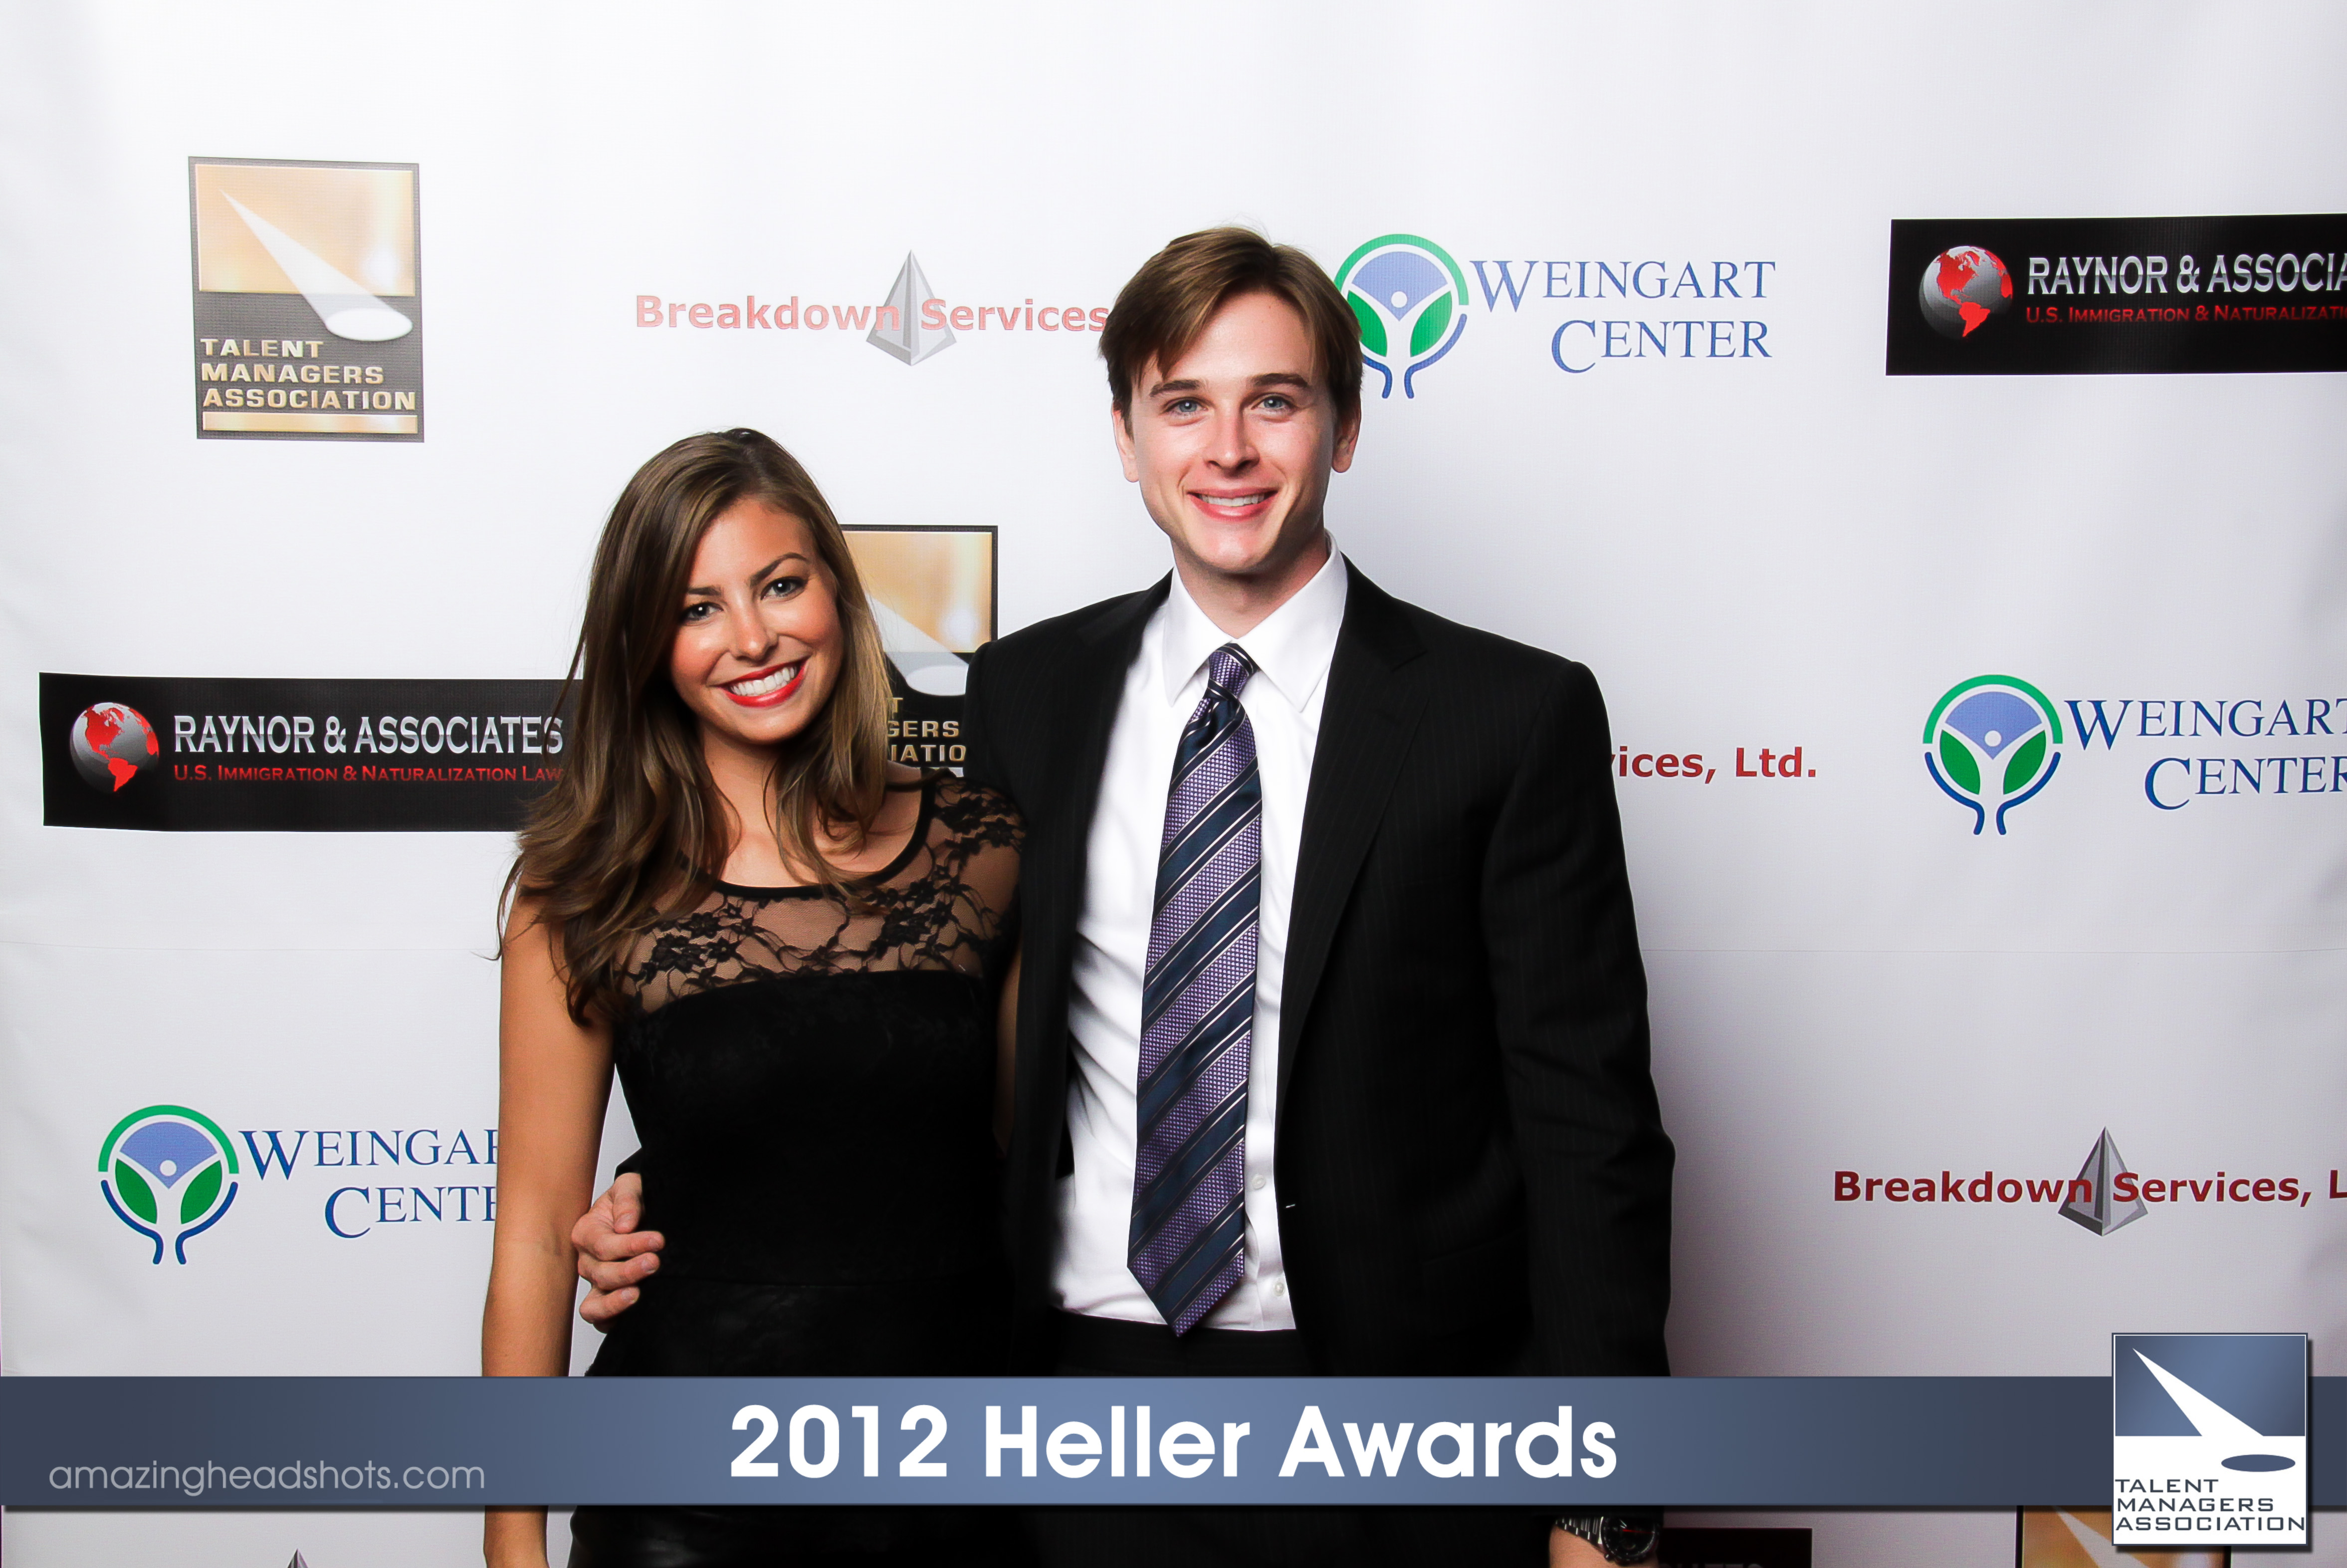 Lang Maddox and Grant Harling at the 2012 Heller Awards